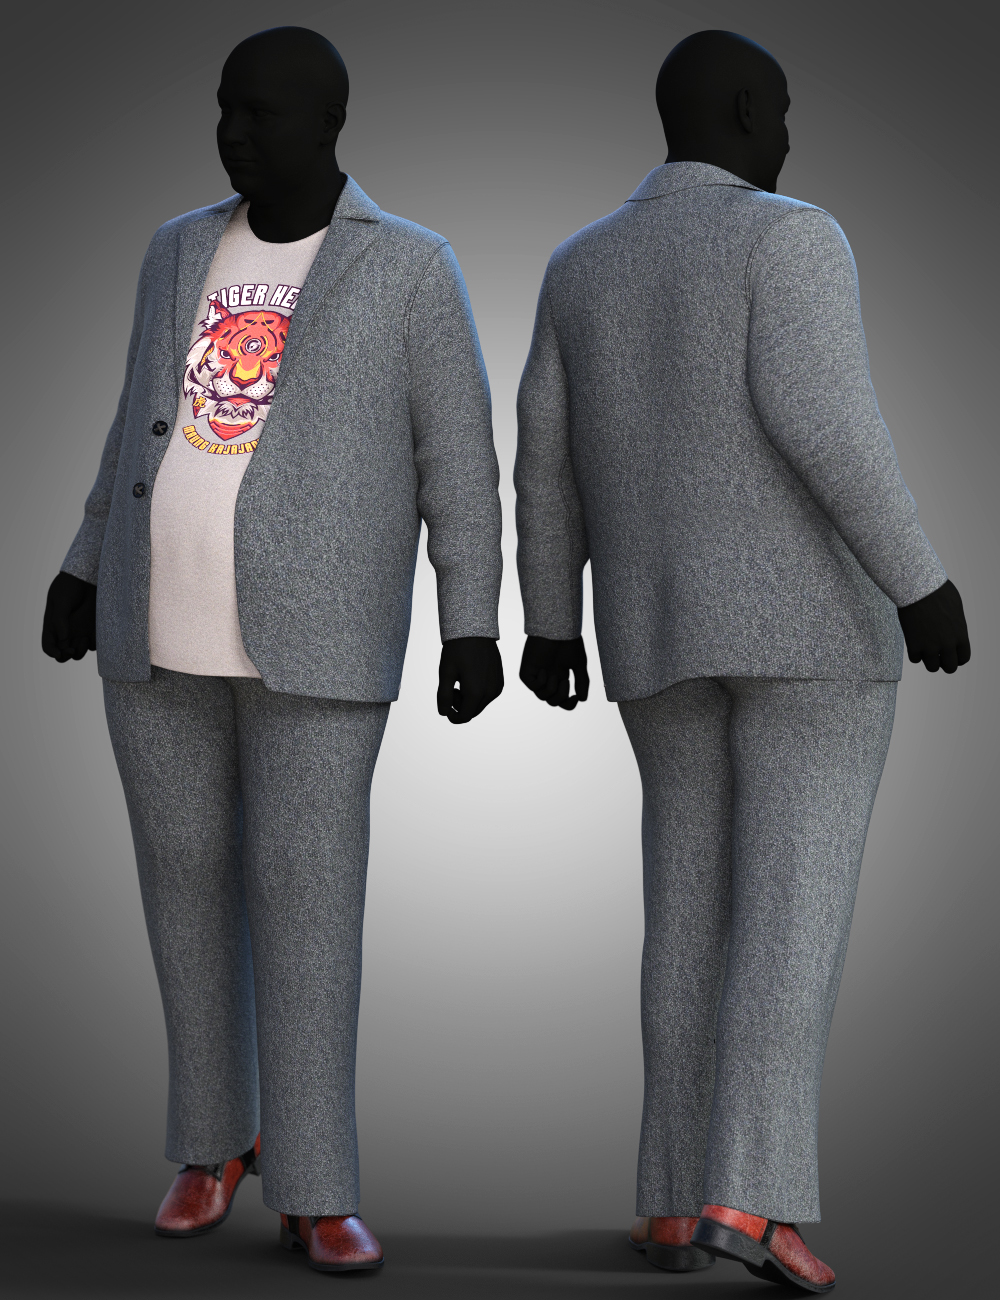 dForce Casual Suit Textures by: Moonscape GraphicsSade, 3D Models by Daz 3D